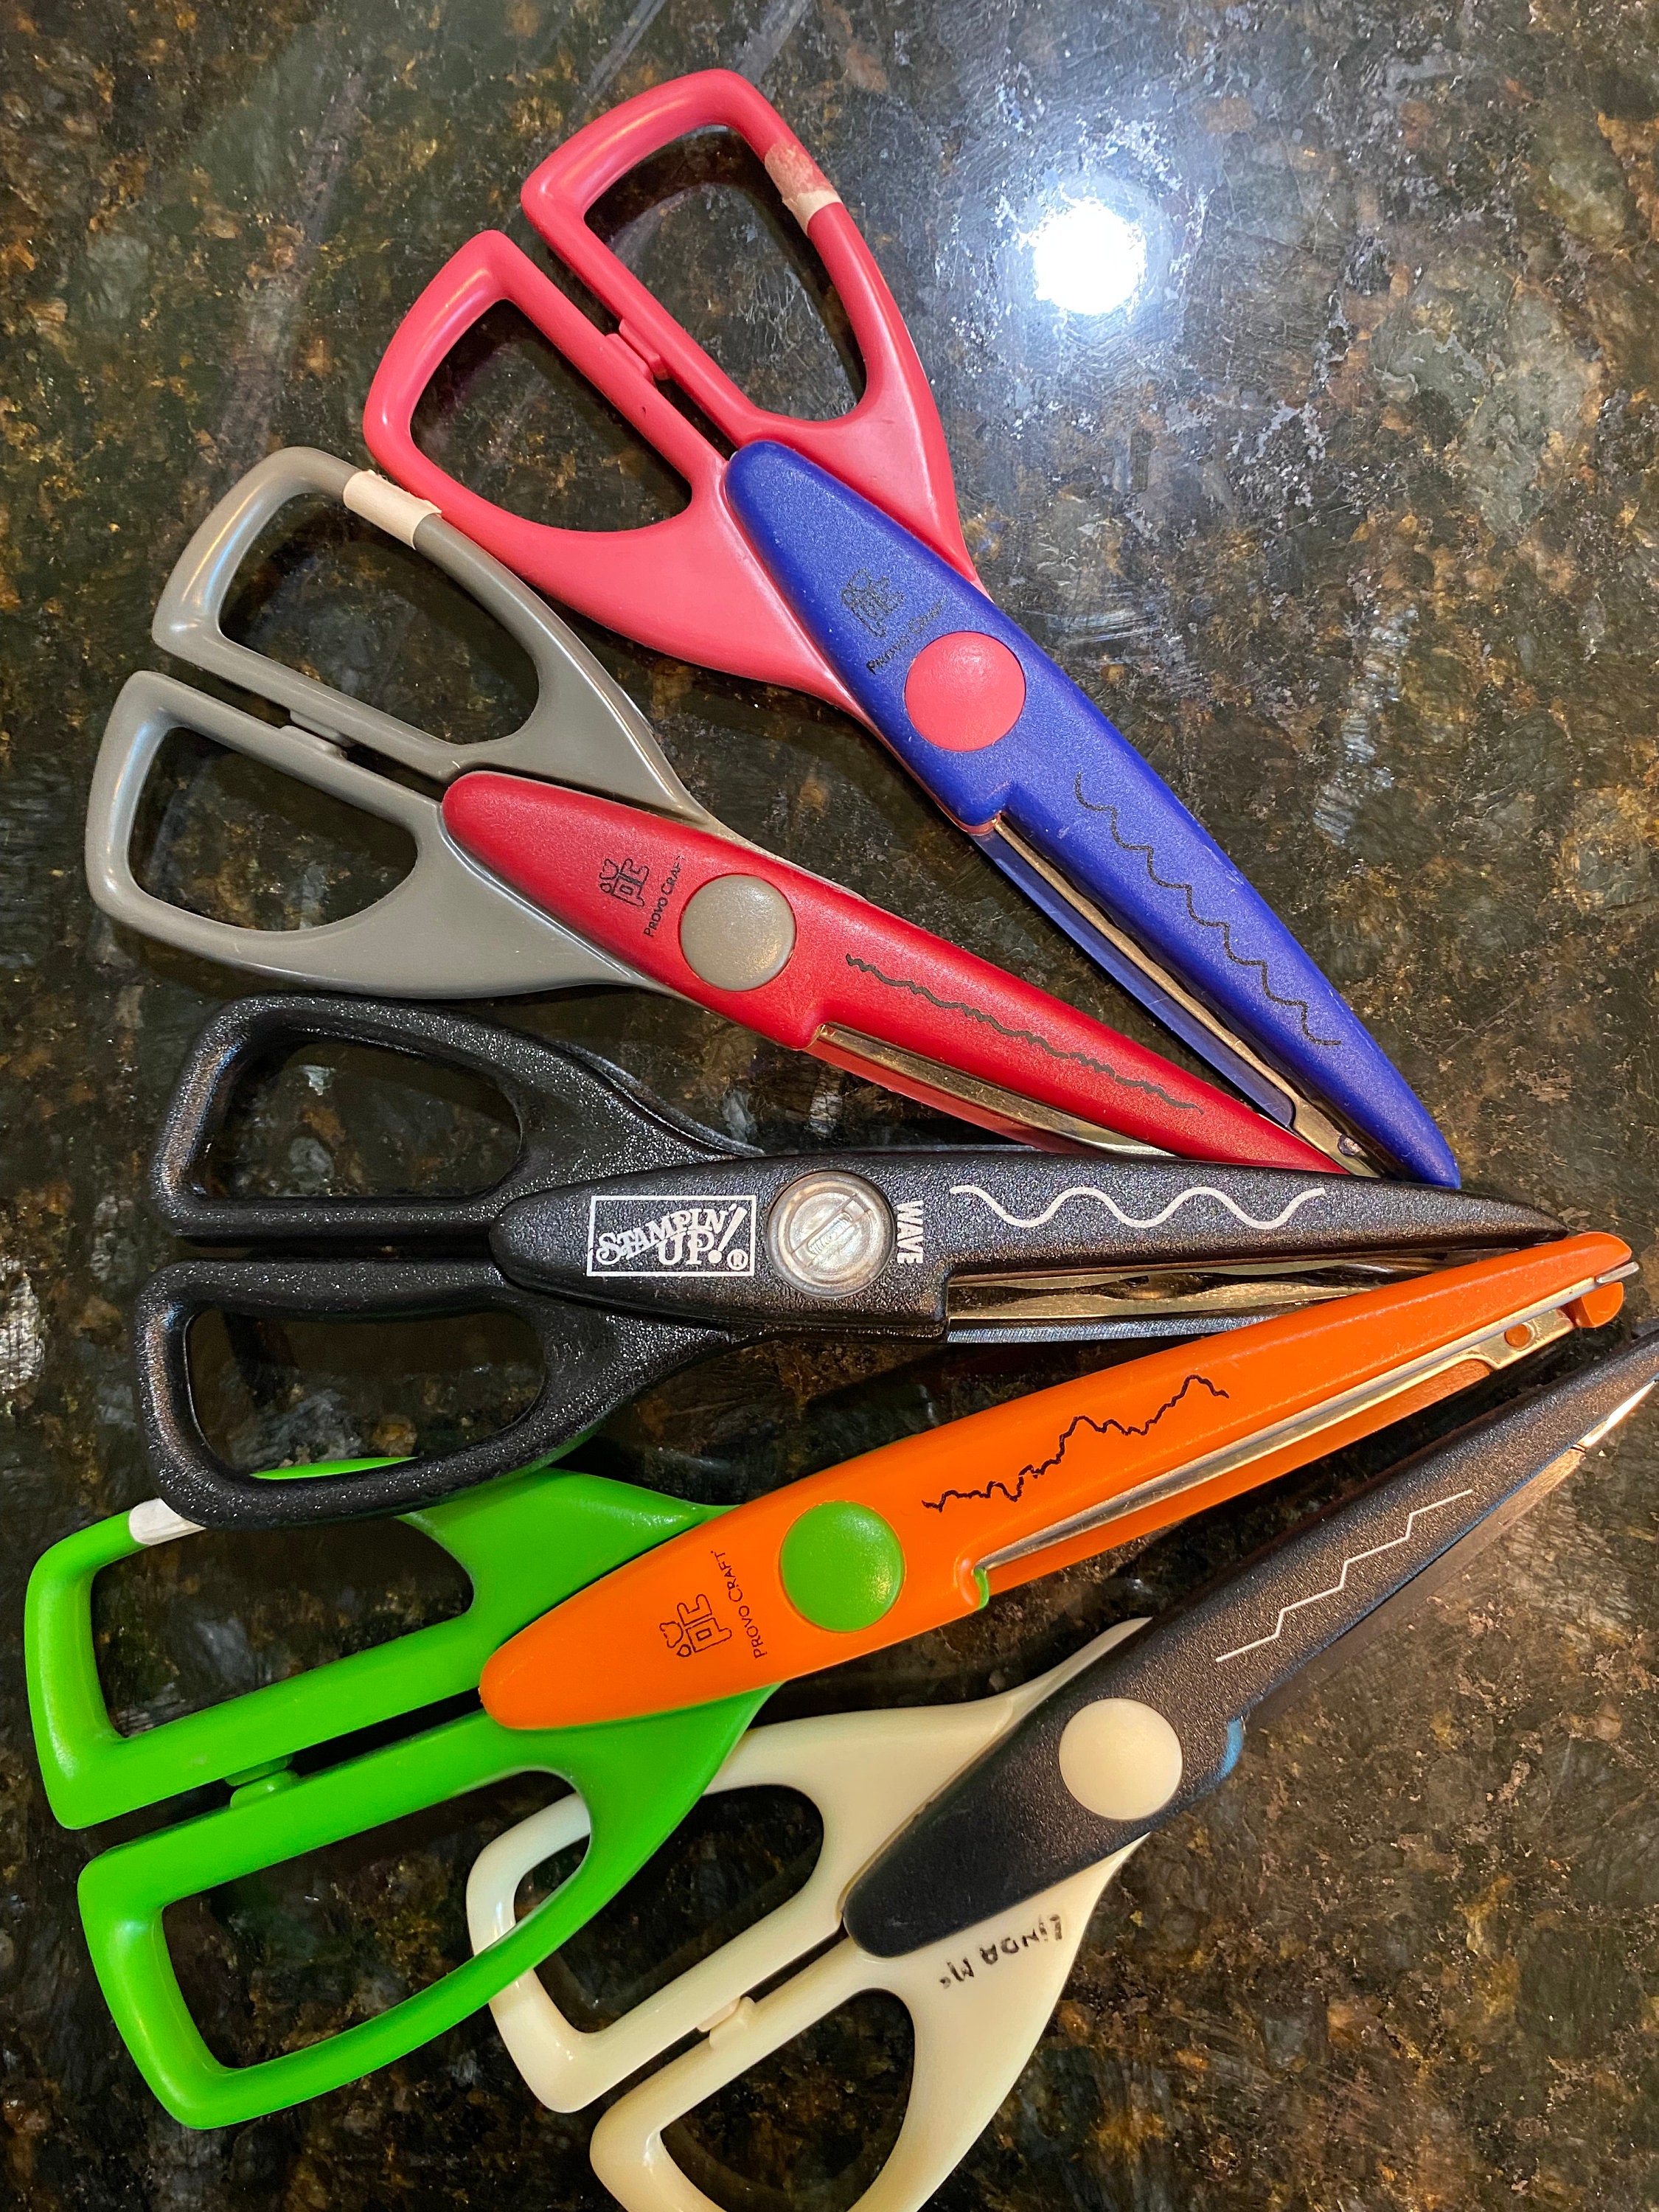 7 Titanium Bonded Shears / Scissors by Clauss 3 Colors 